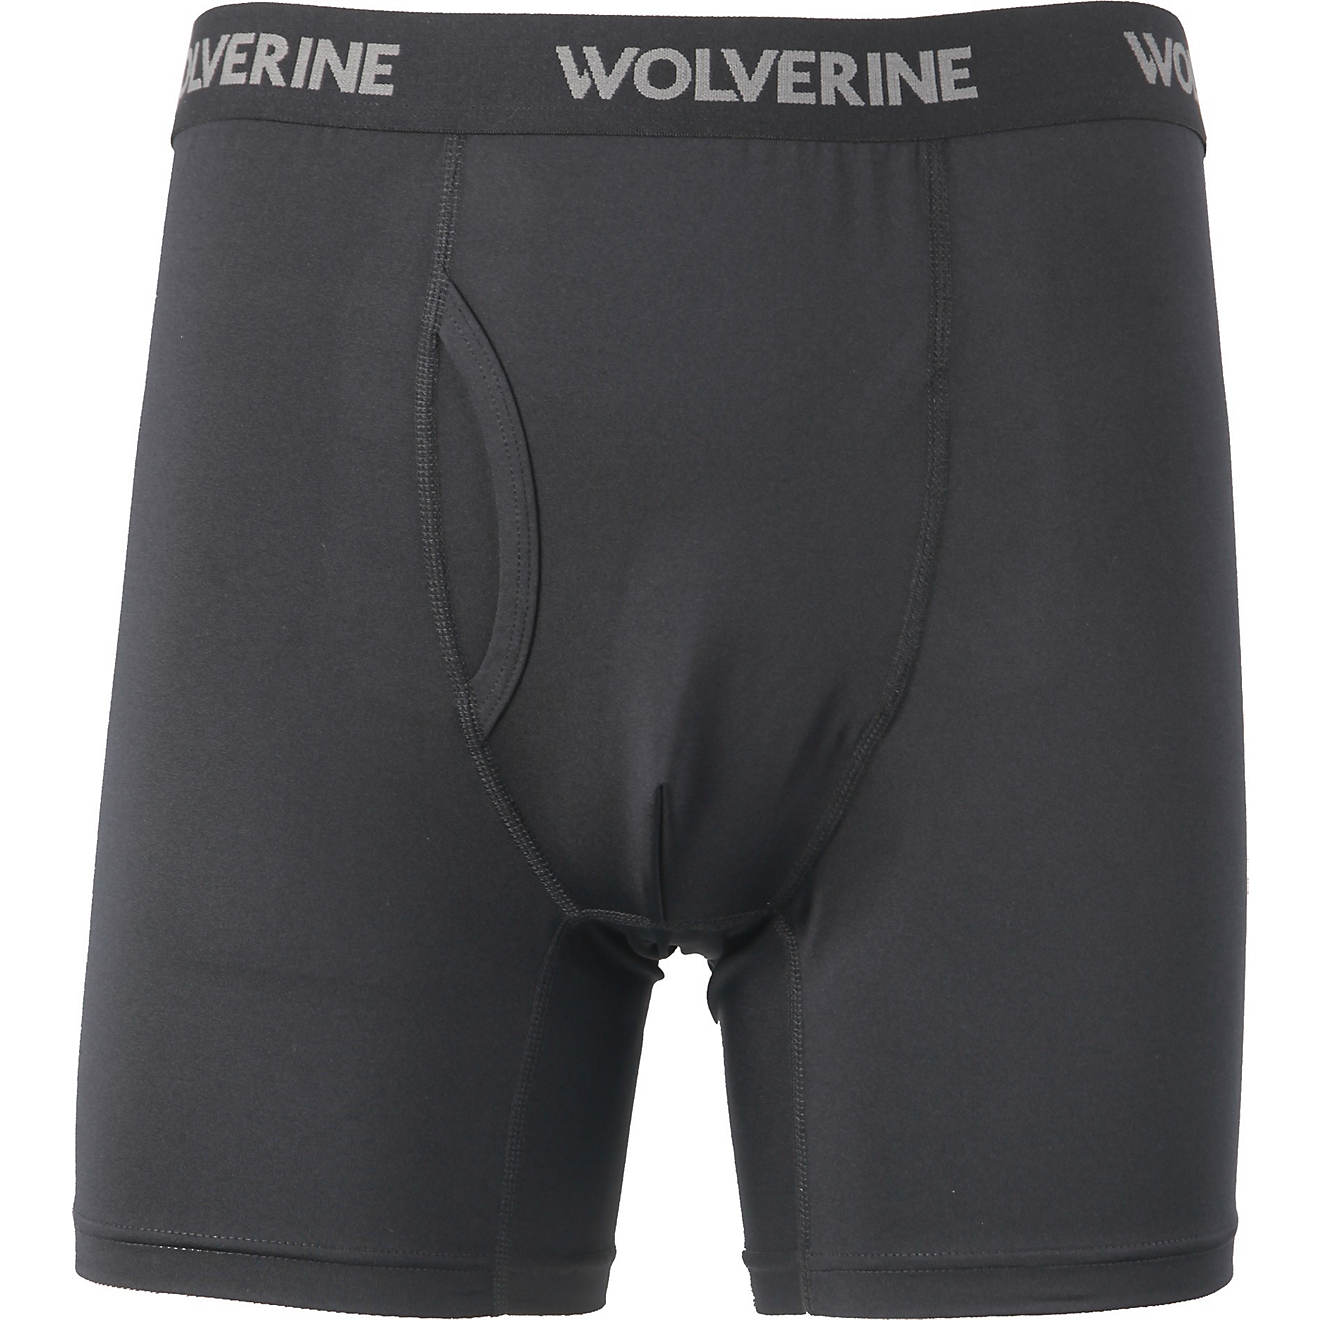 Wolverine Men's Innerwear Boxer Briefs 2-Pack                                                                                    - view number 1